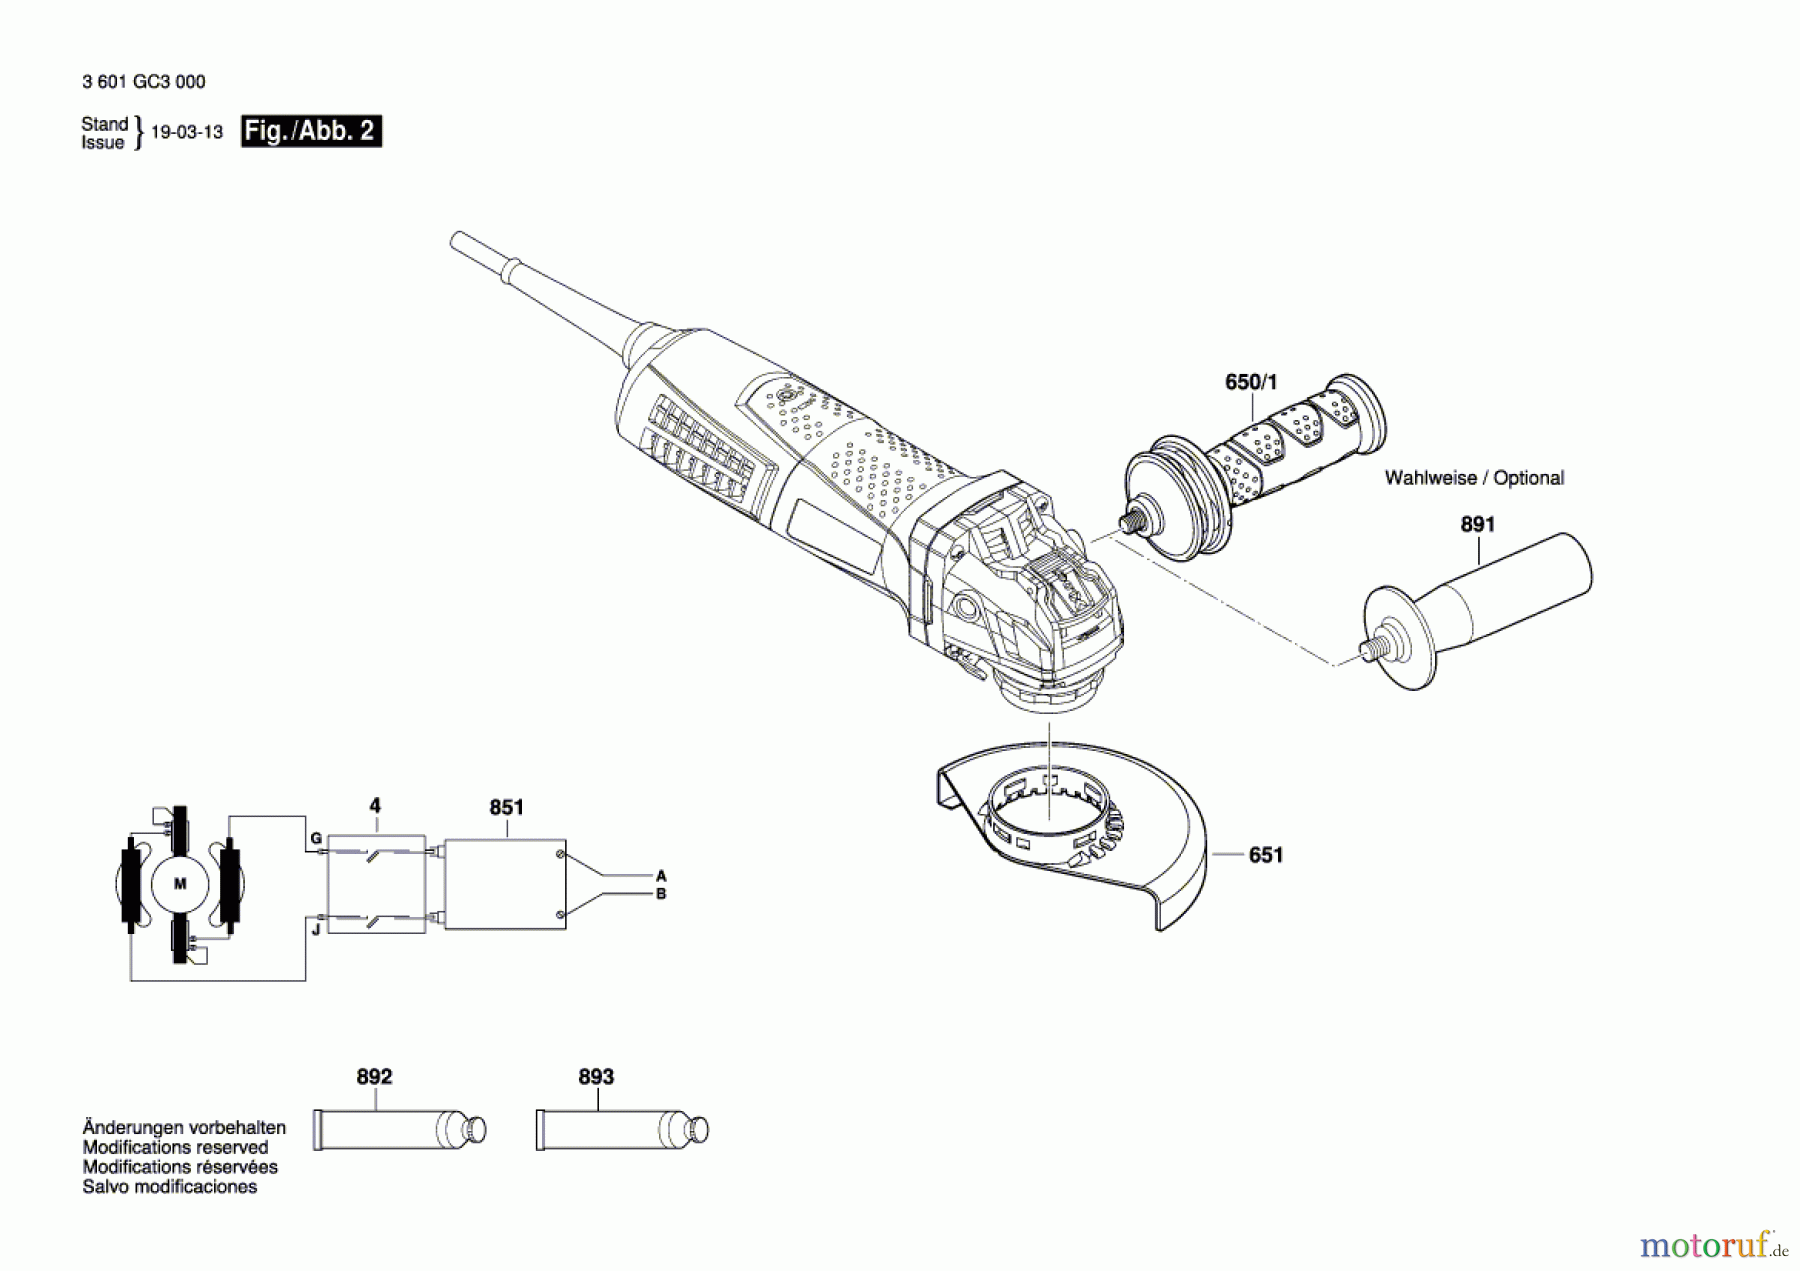  Bosch Werkzeug Winkelschleifer GWX 17-125 Seite 2